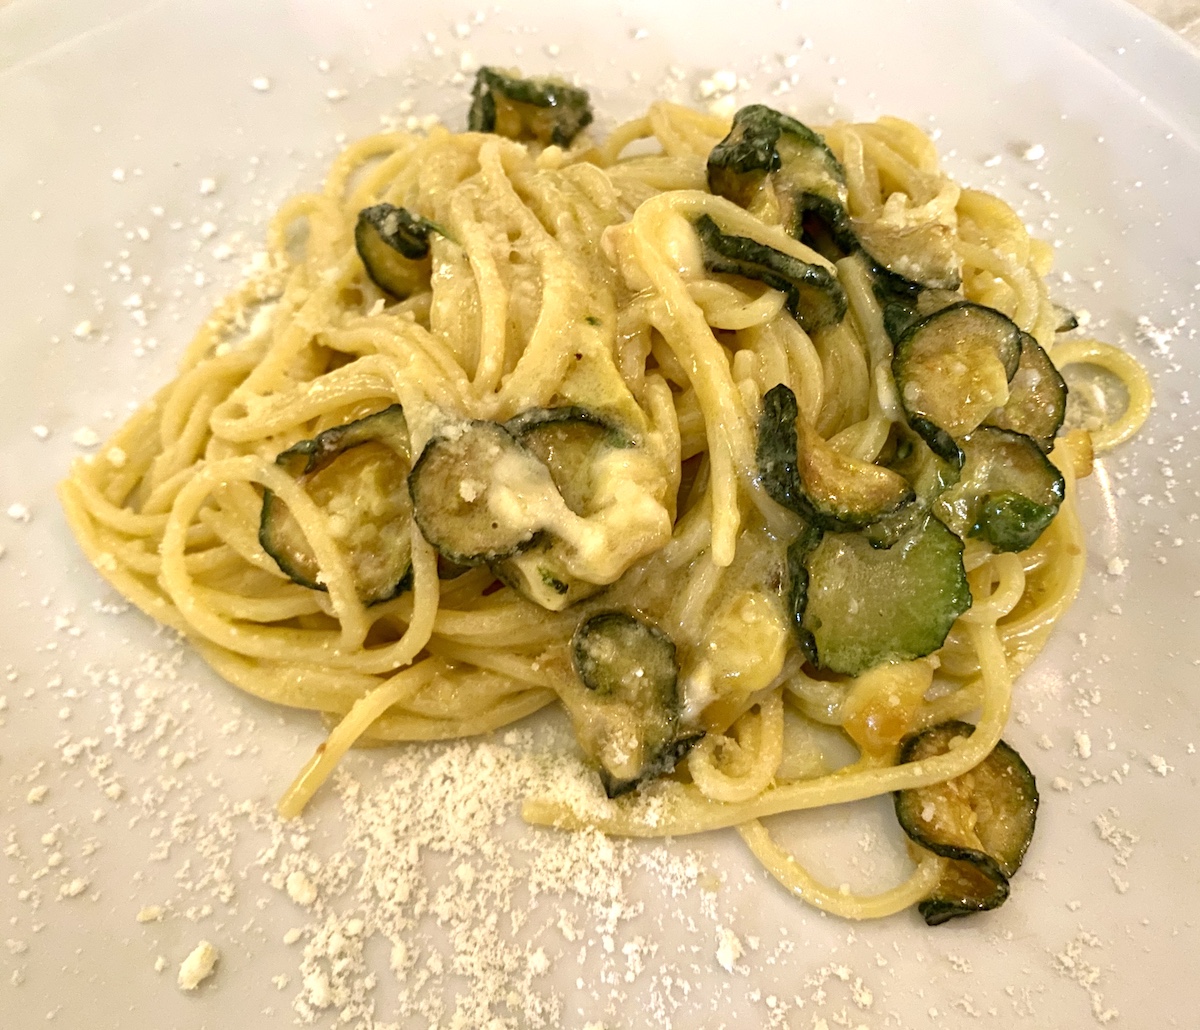 Spaghetti alla Nerano at Osteria da Carmela in Naples